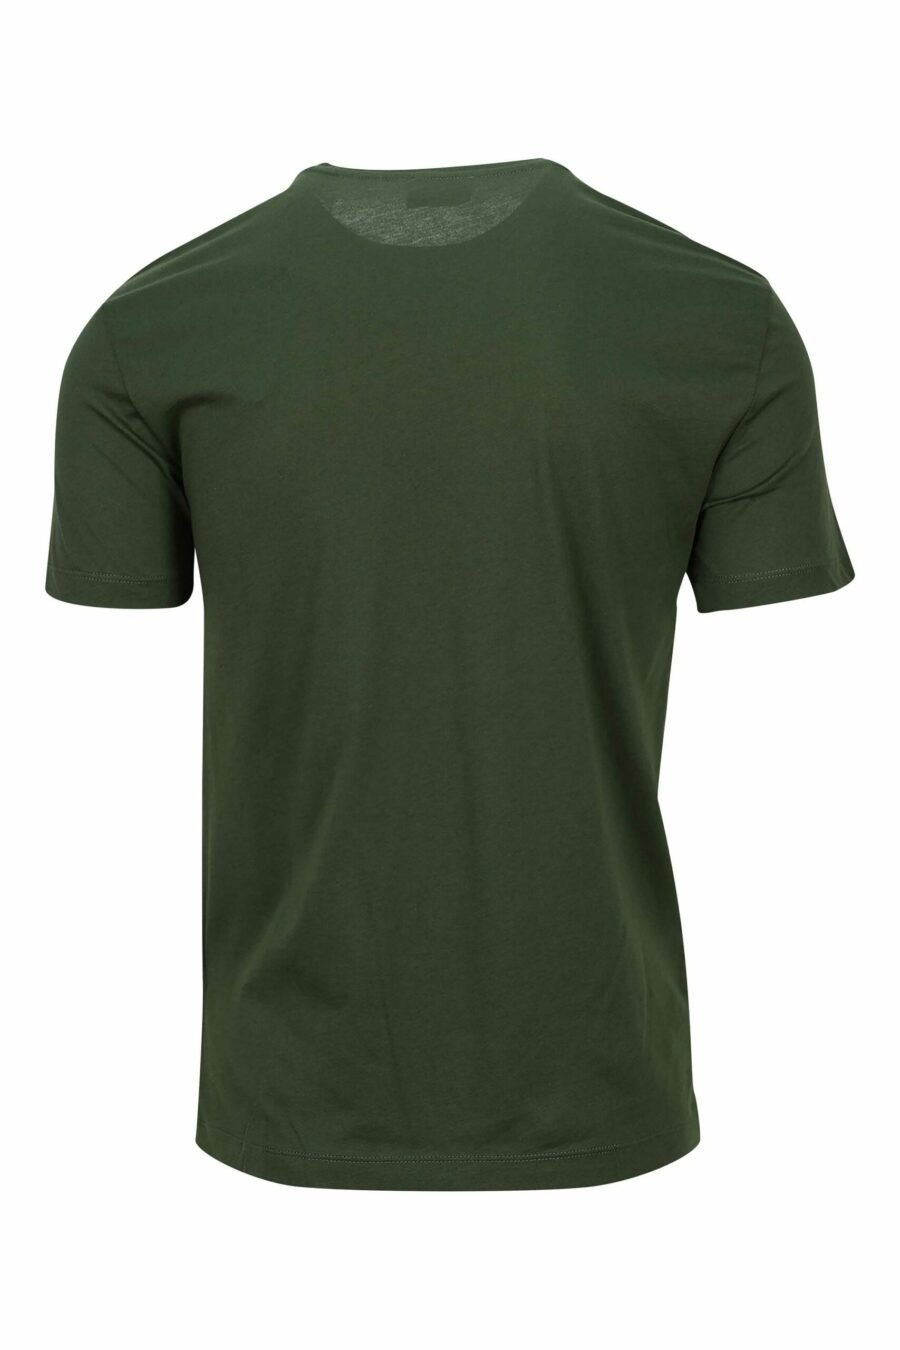 EA7 - Camiseta verde oscuro con minilogo etiqueta 